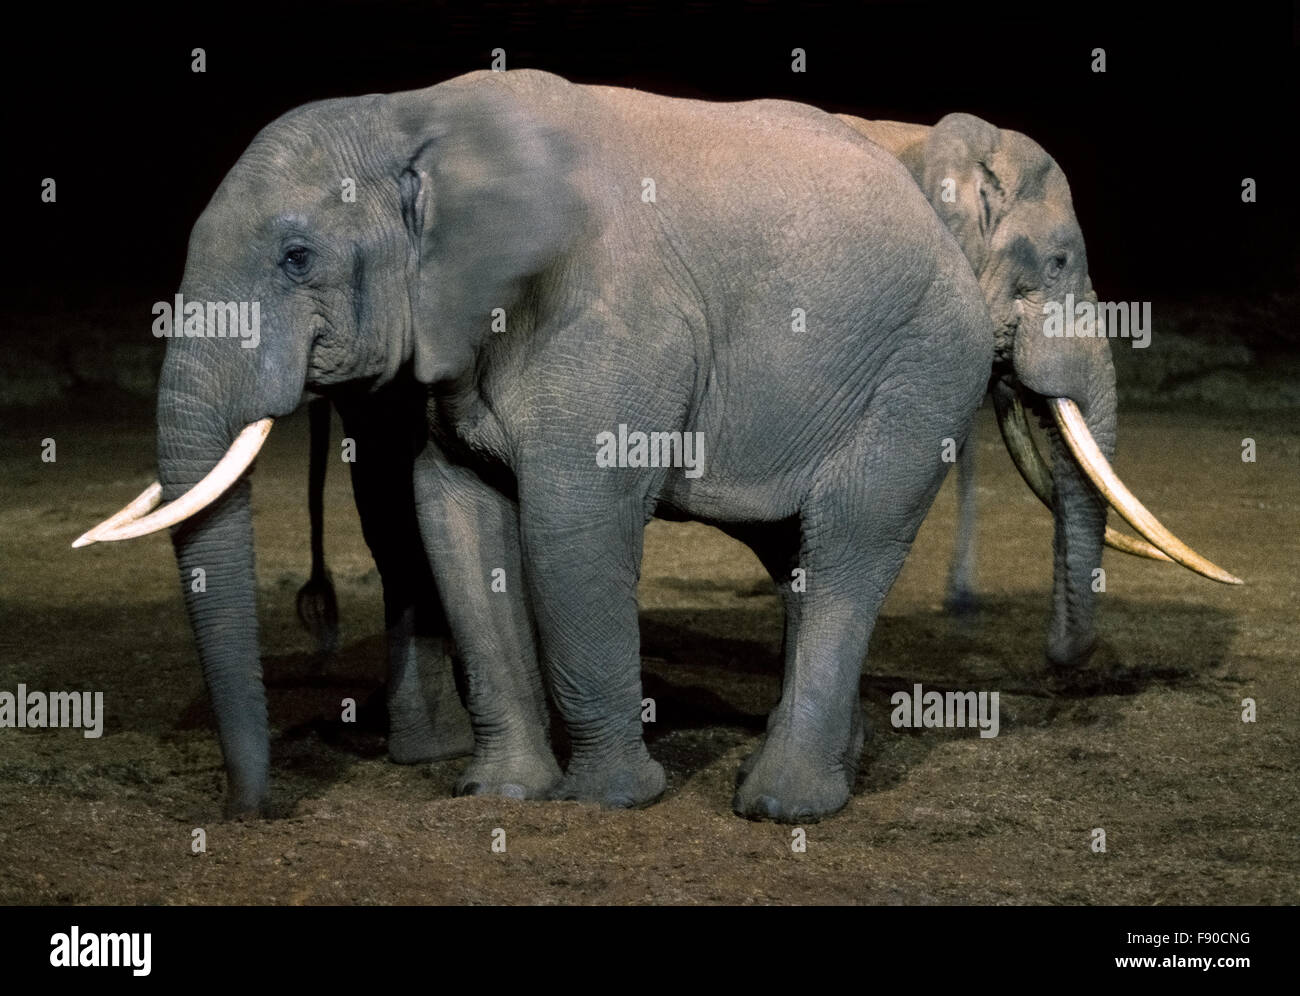 'Un' à deux têtes d'éléphants africains est capturé dans la nuit dans ce drôle photographie prise de l'arche, un populaire Safari Lodge avec des belvédères donnant sur un point d'eau qui attire tous les types de gibier sauvage à Aberdare National Park au Kenya, Afrique de l'Est. Le braconnage des animaux précieux des défenses en ivoire entraînerait, selon les estimations de l'abattage de 100 éléphants un jour à travers l'Afrique, où certains écologistes estiment la population totale a été décimée à aussi peu que 250 000 éléphants. Banque D'Images